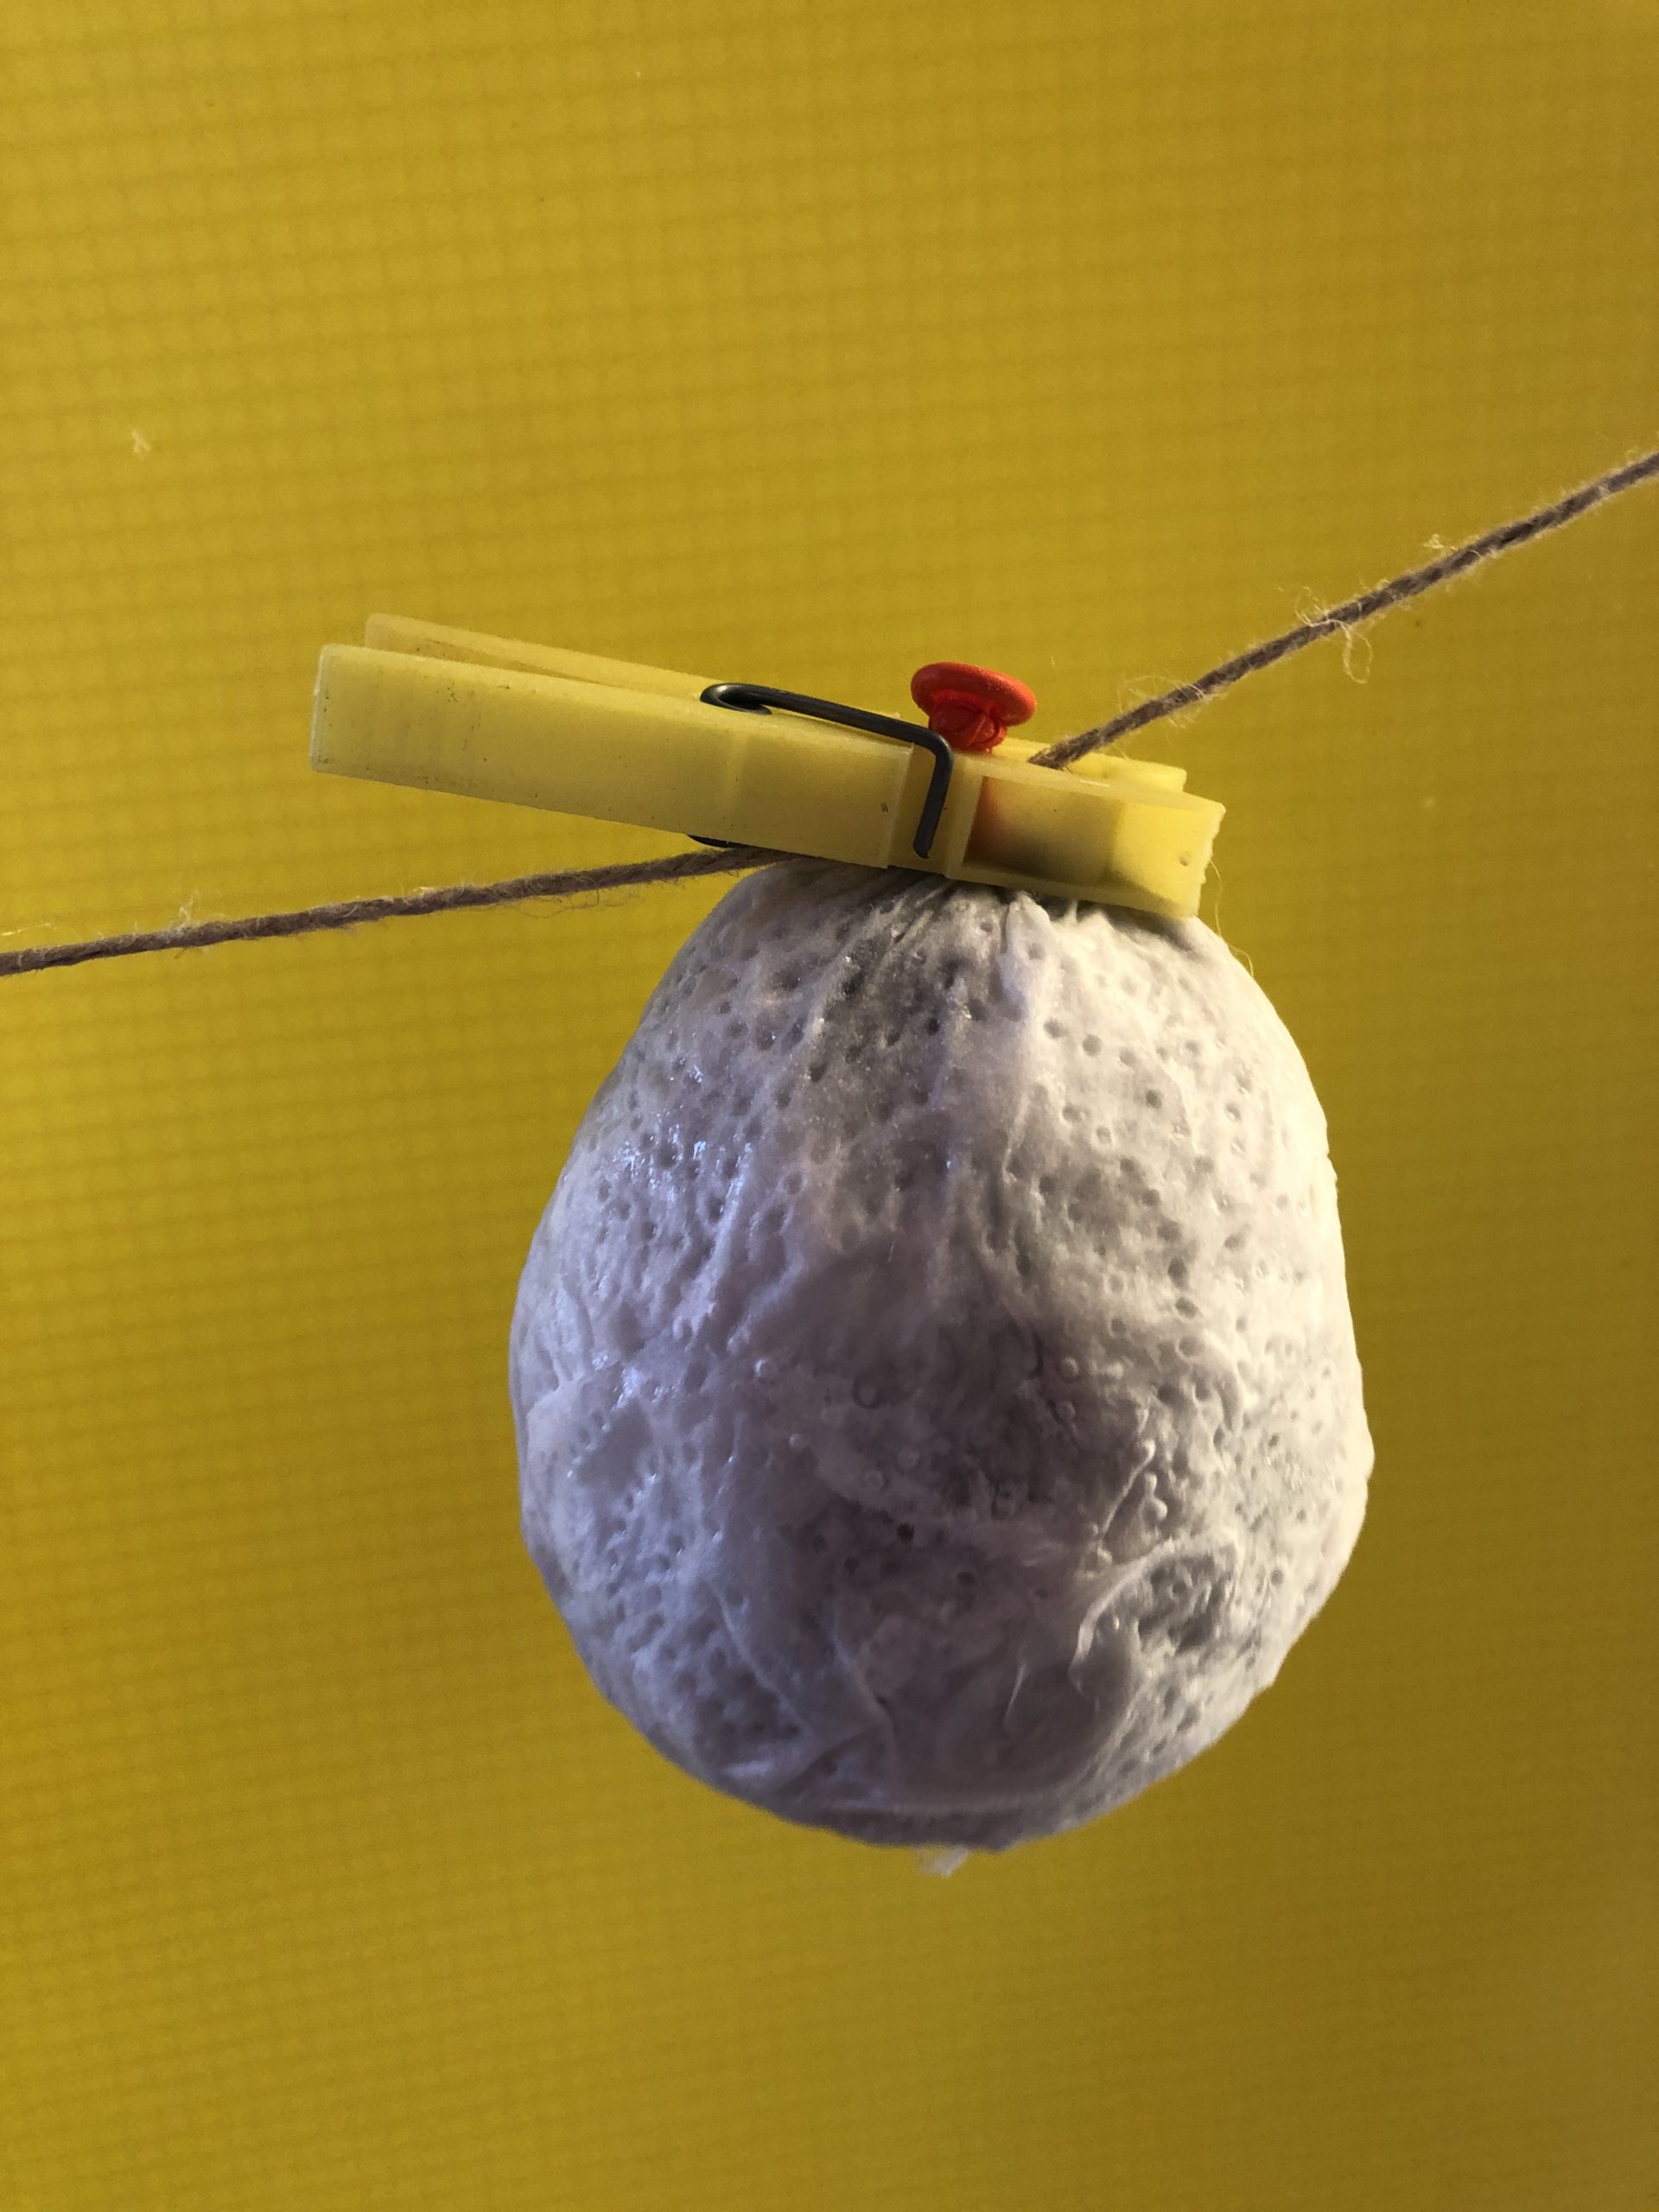 Bild zum Schritt 4 für das Bastel- und DIY-Abenteuer für Kinder: 'Den Ballon (am Knoten) mit einer Wäscheklammer zum Trocknen aufhängen....'